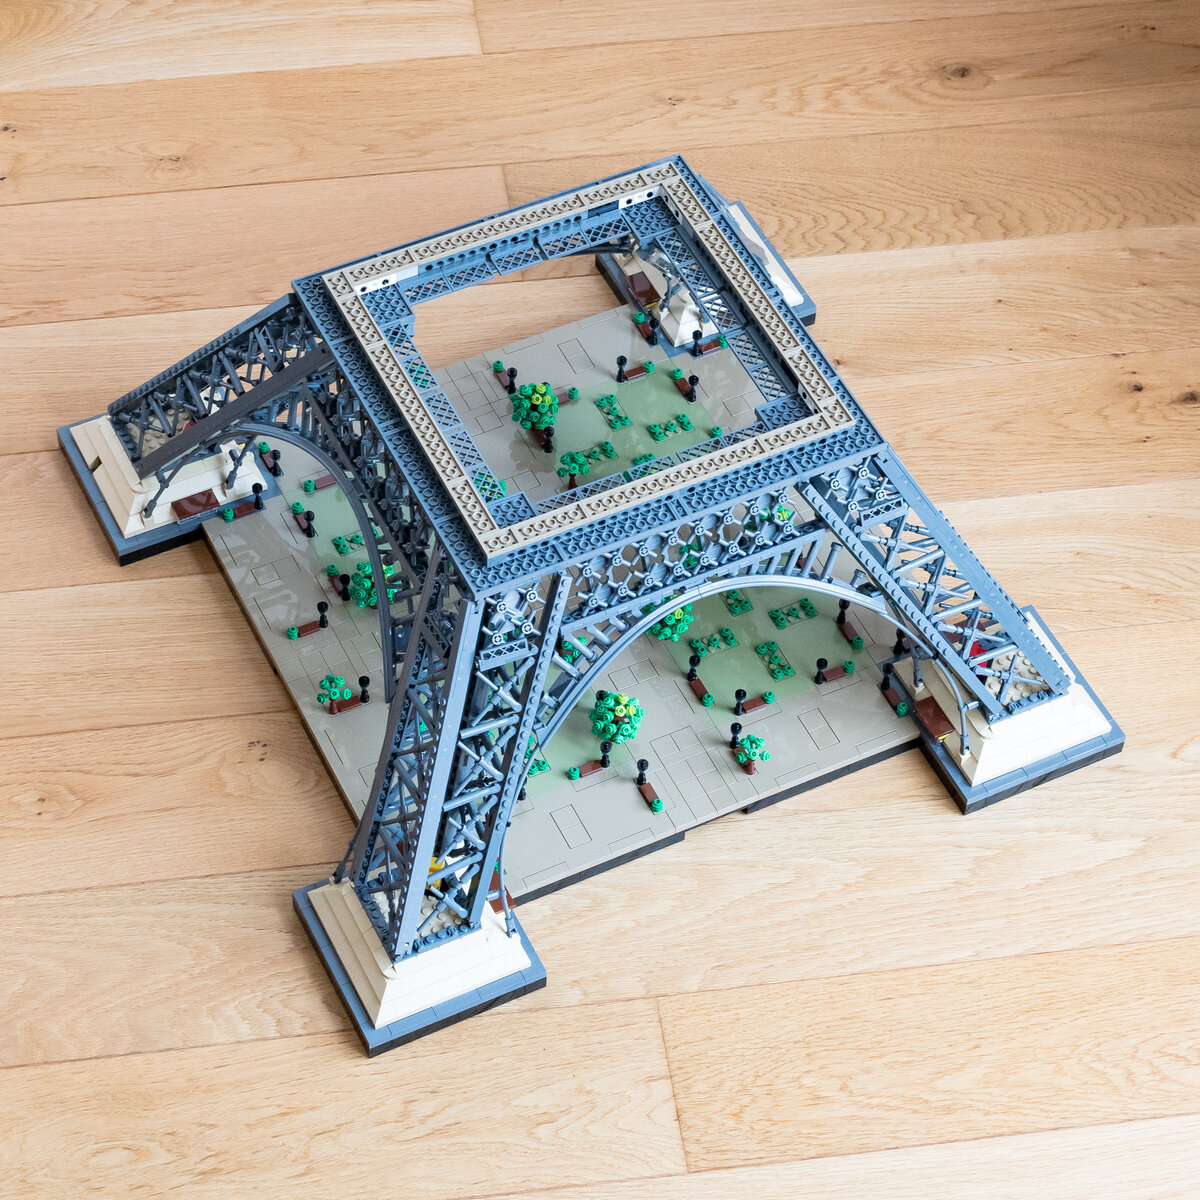 Lego® Architecture Paris avec tour Eiffel : achat et prix